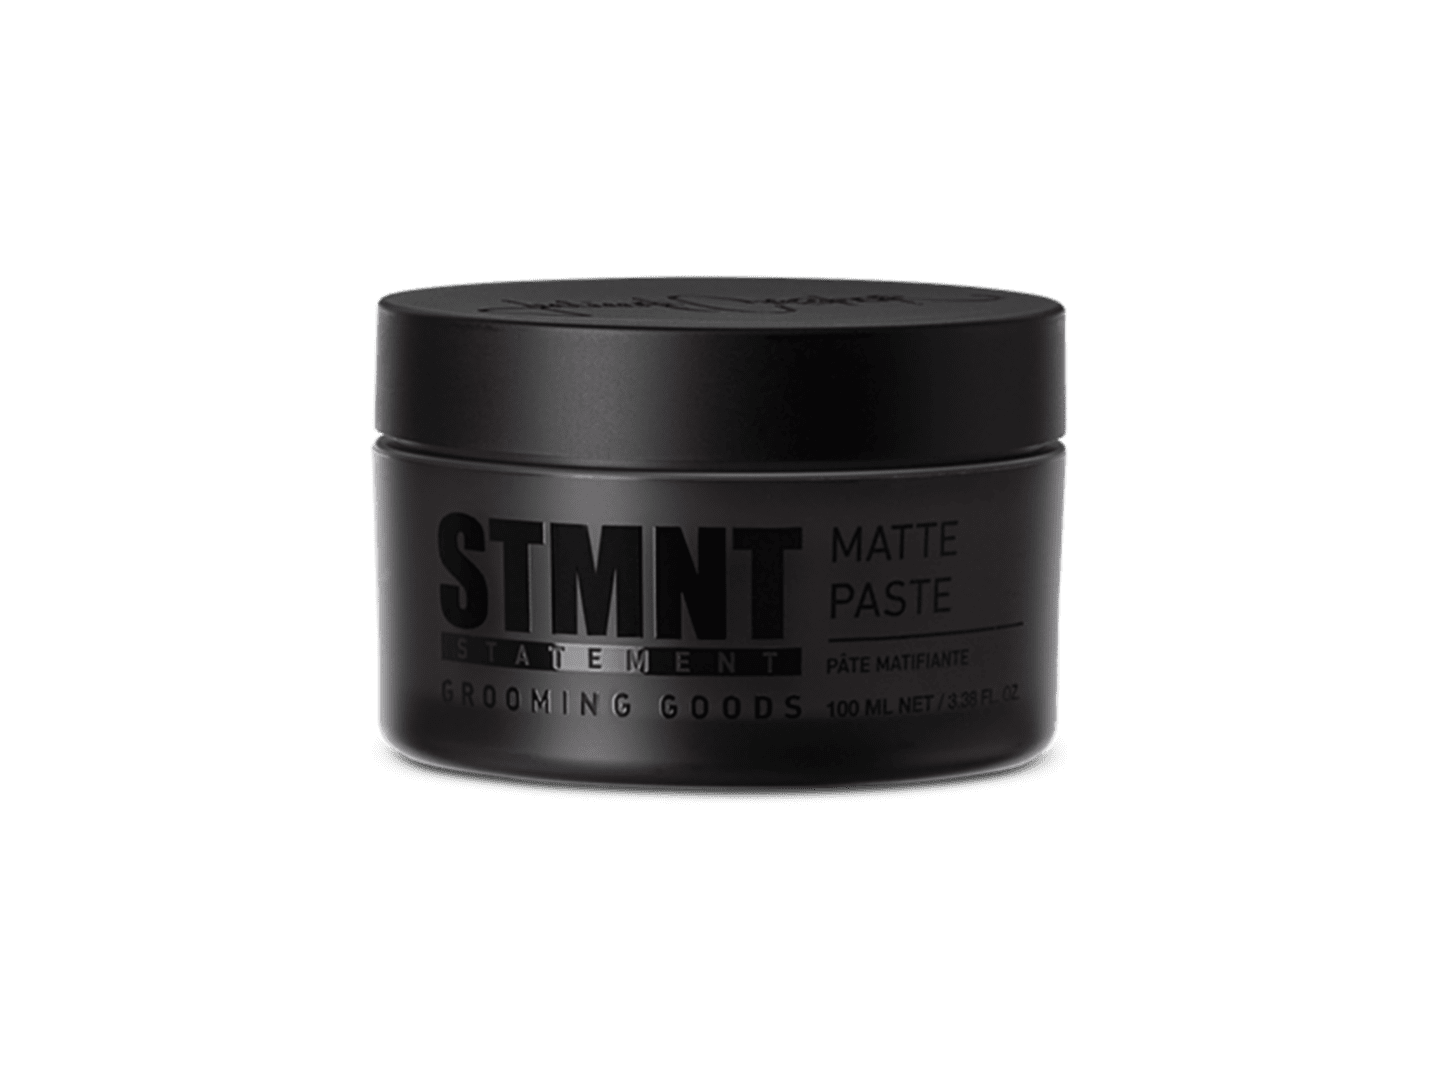 STMNT Matte Paste, 3.38 oz.